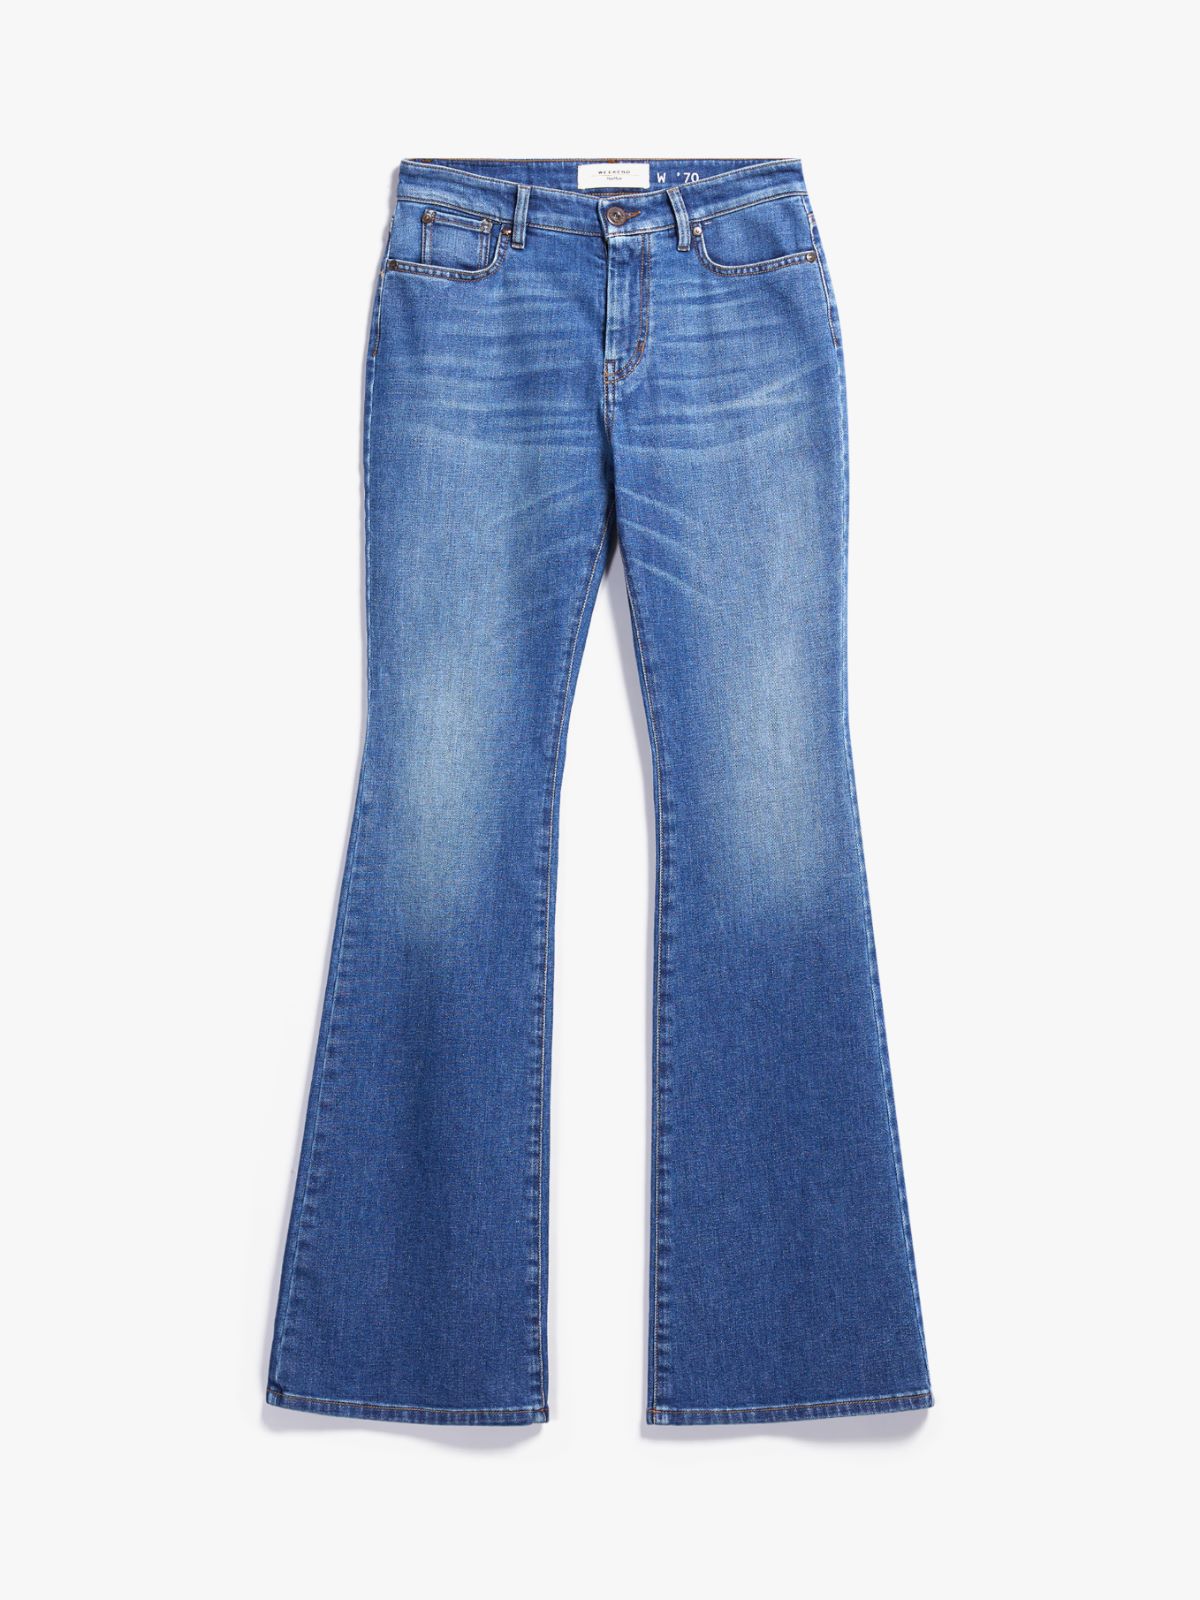 Flared cotton denim jeans - NAVY - Weekend Max Mara - 5